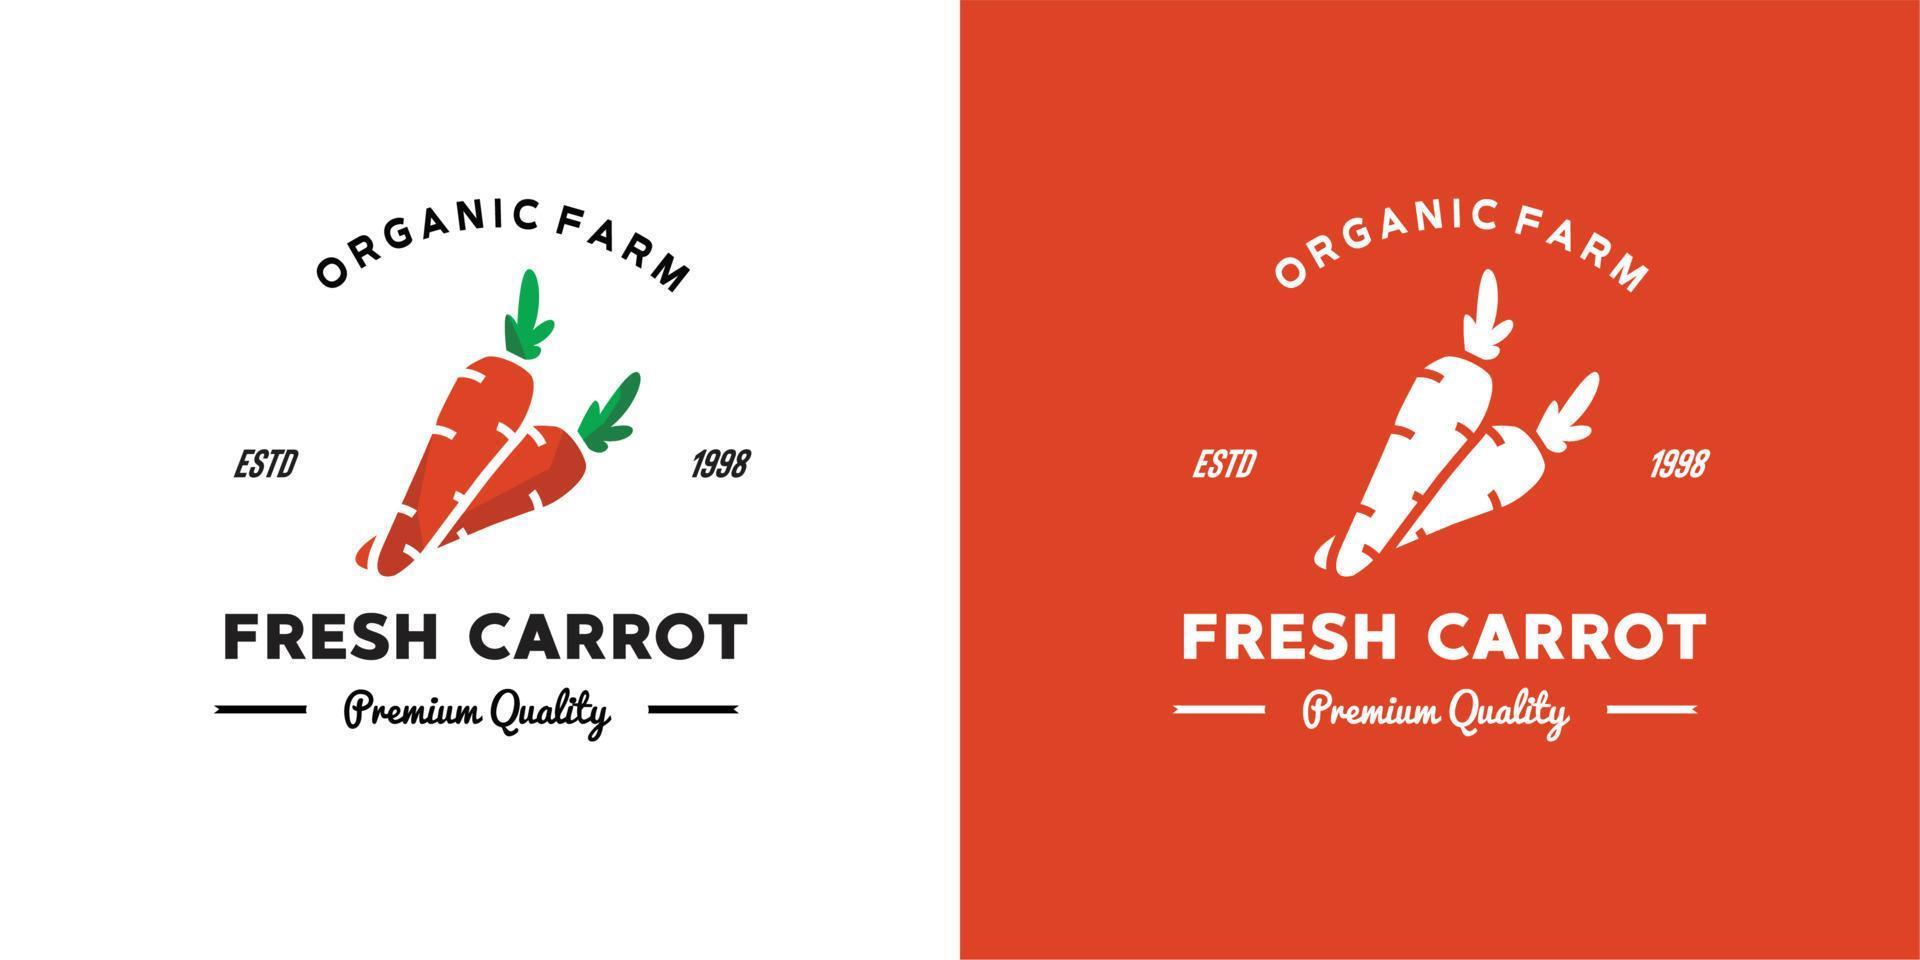 gráfico vectorial ilustrativo de zanahoria fresca naranja de una granja orgánica buena para el logotipo vintage de zanahoria verdura de mejor calidad en la tienda de comestibles vector